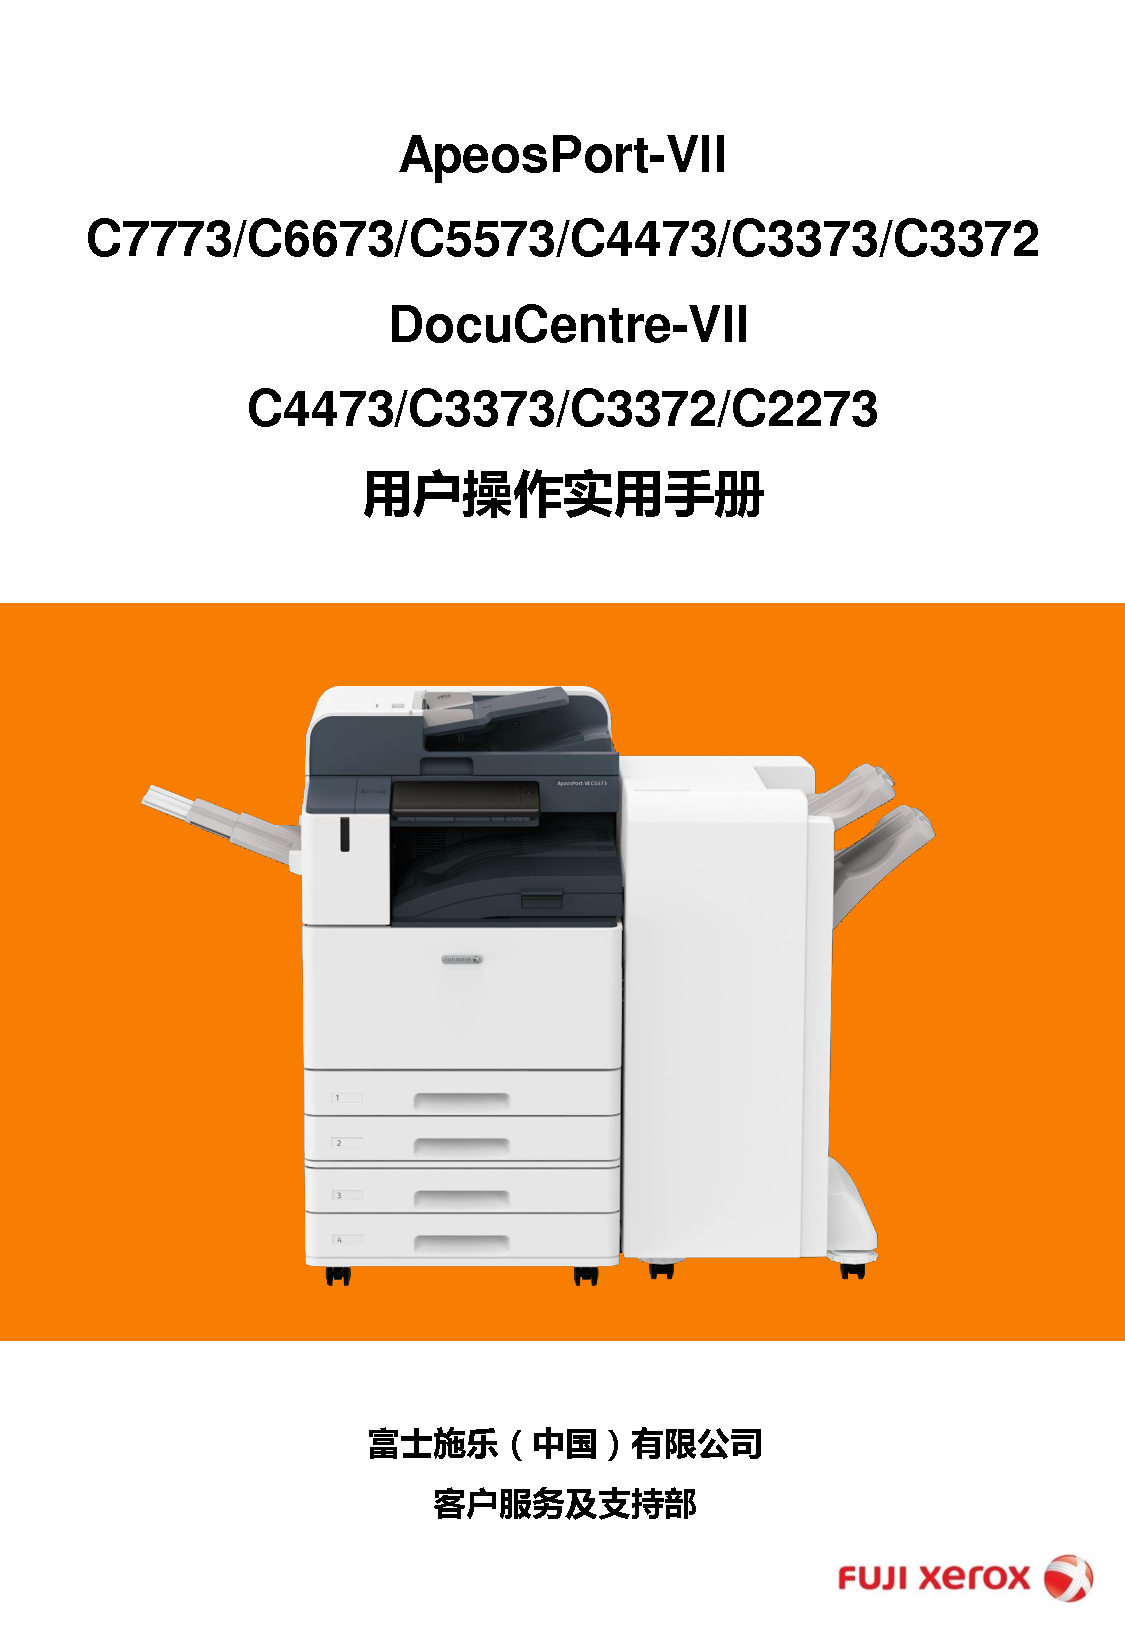 富士施乐 Fuji Xerox ApeosPort-VII C3372, DocuCentre-VII C2273 使用说明书 封面